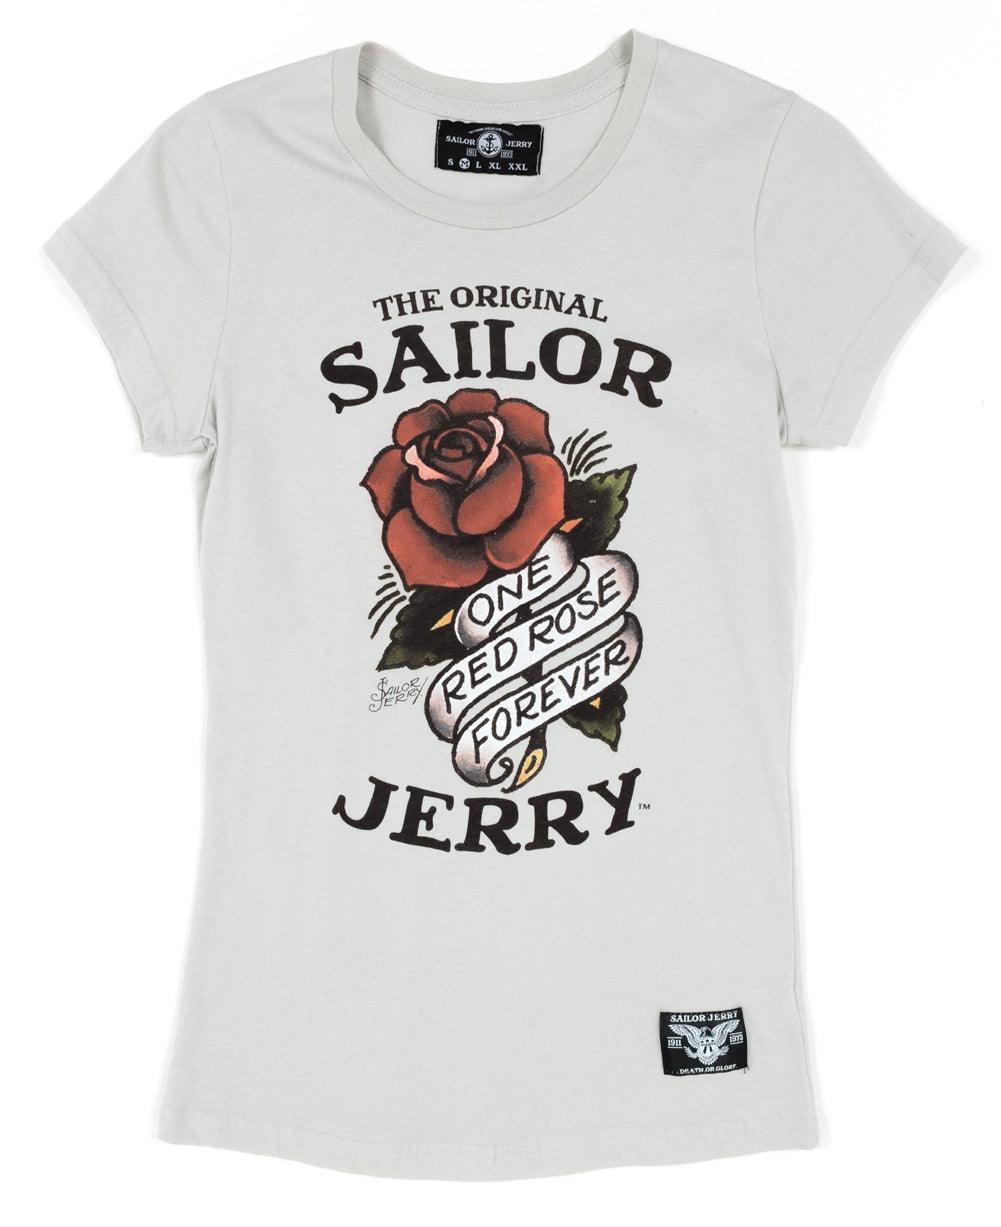 sailor jerry rose